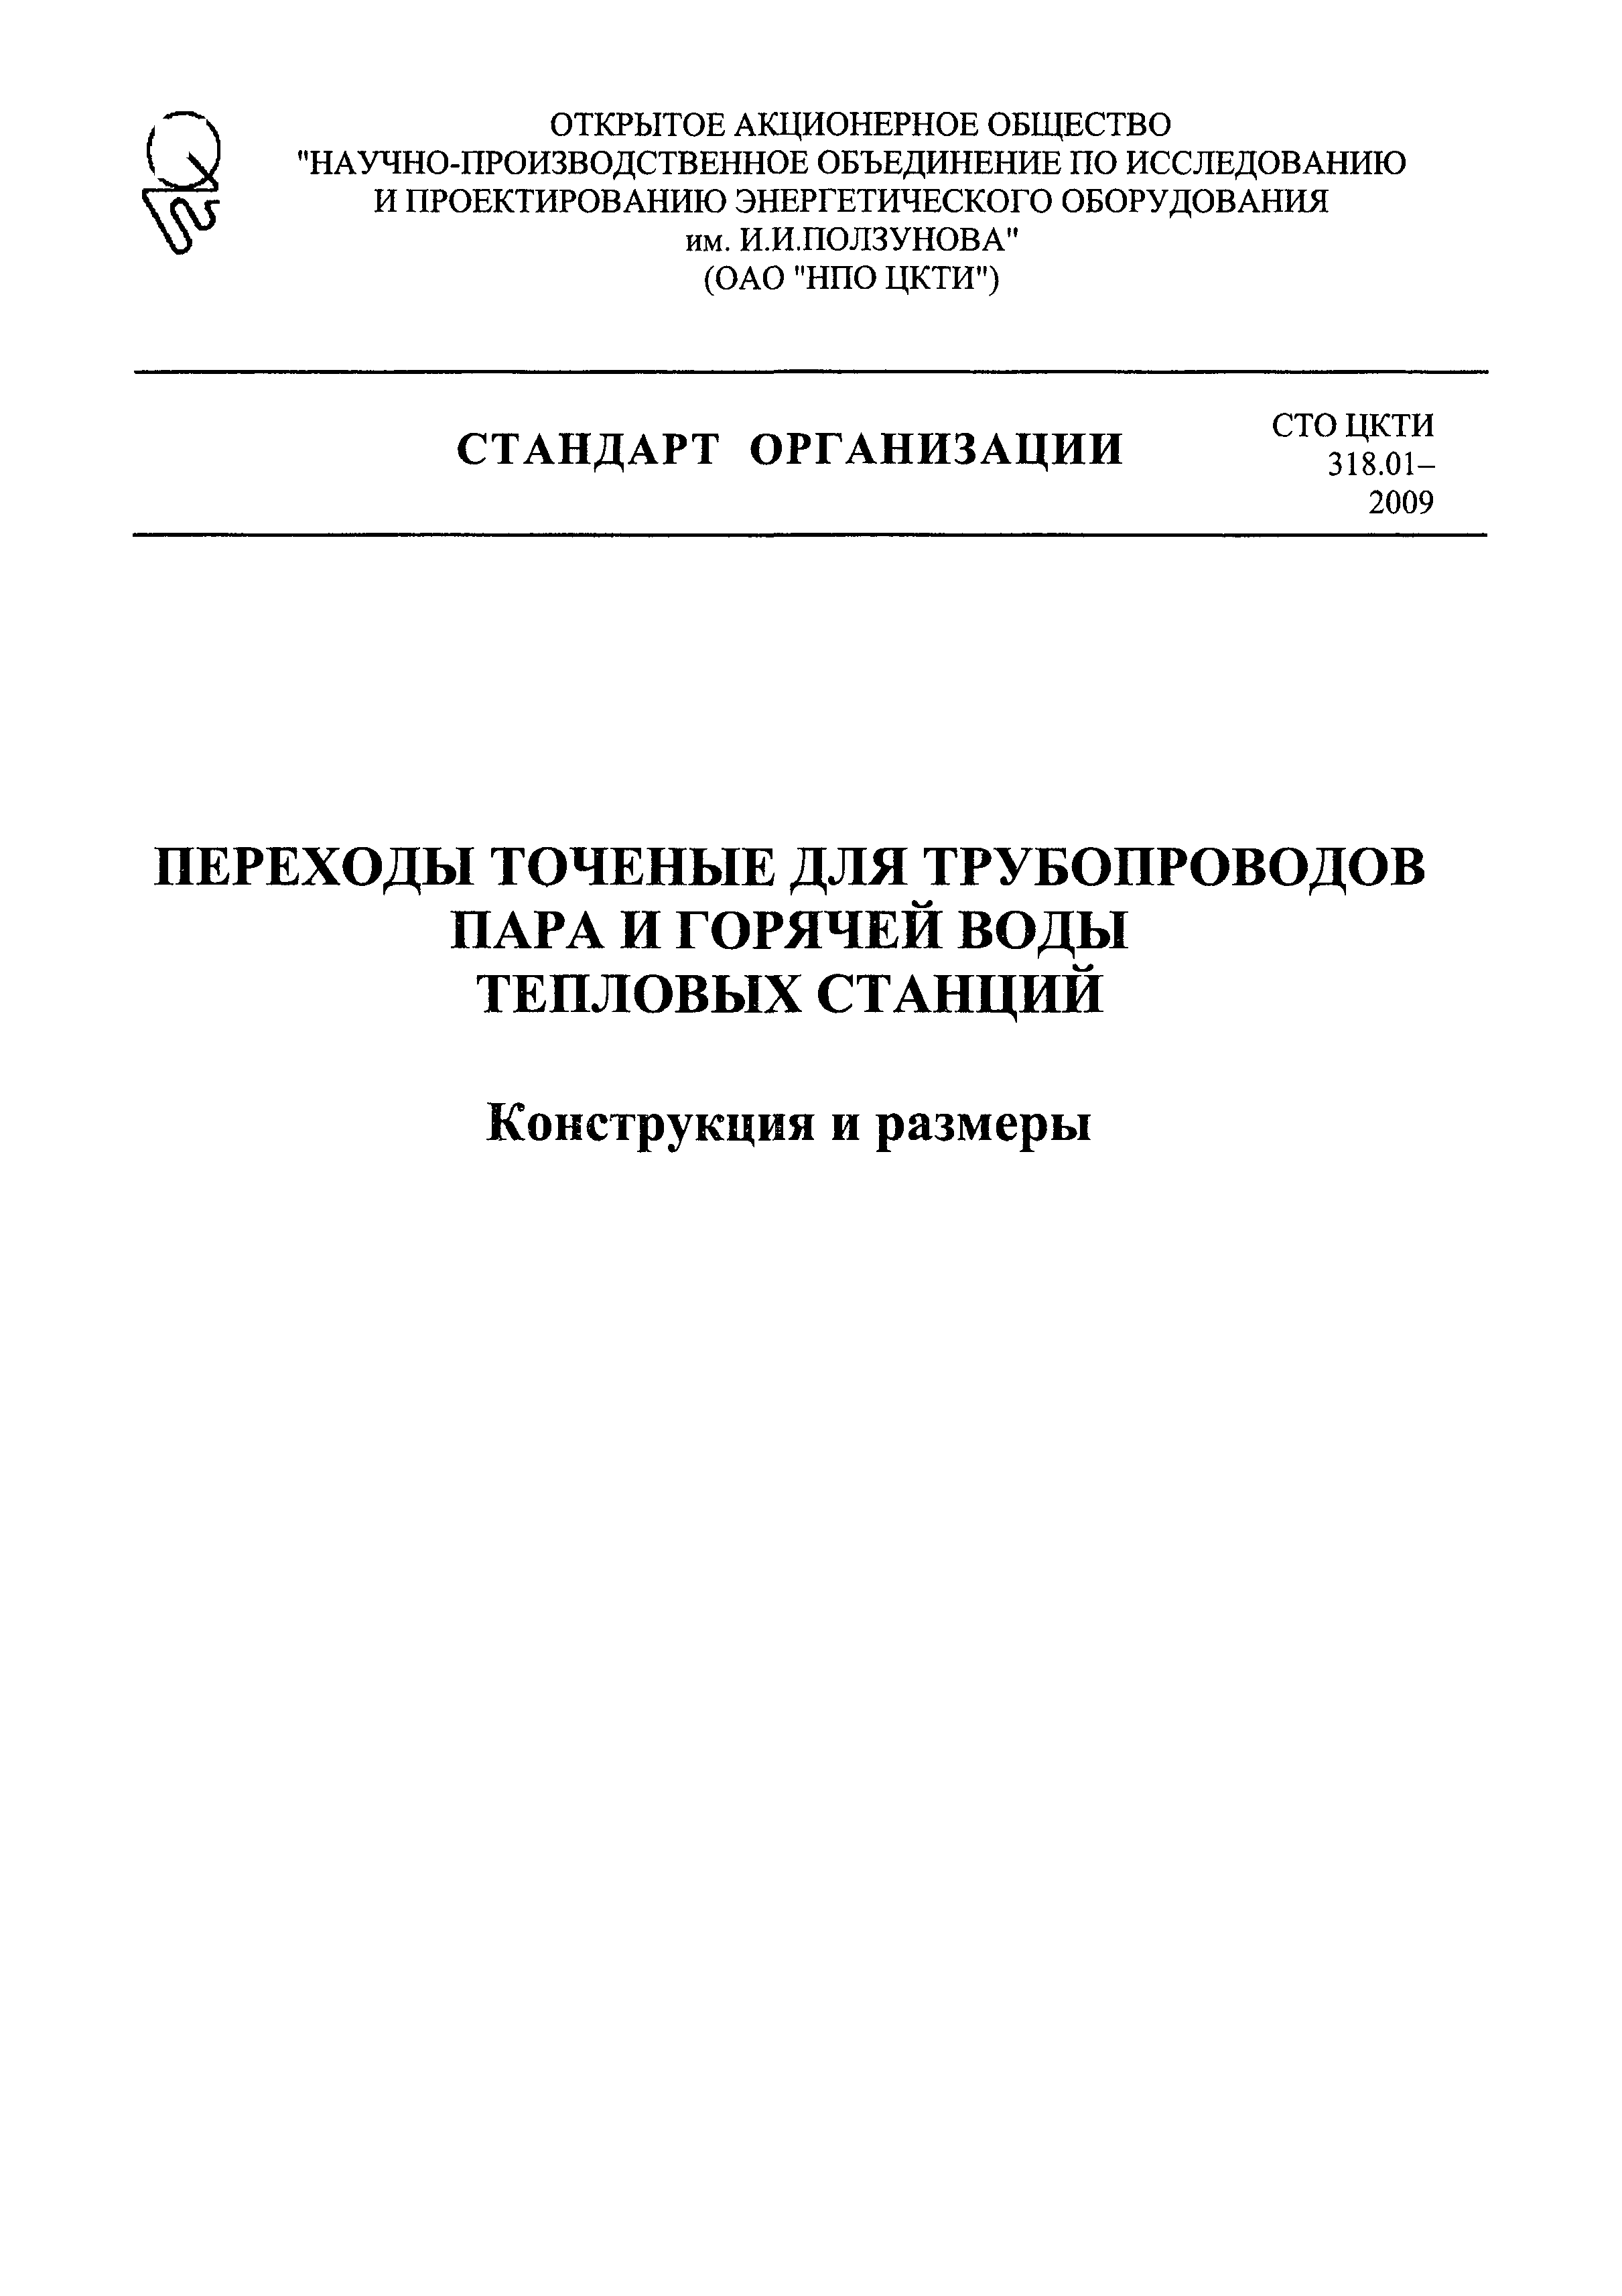 СТО ЦКТИ 318.01-2009